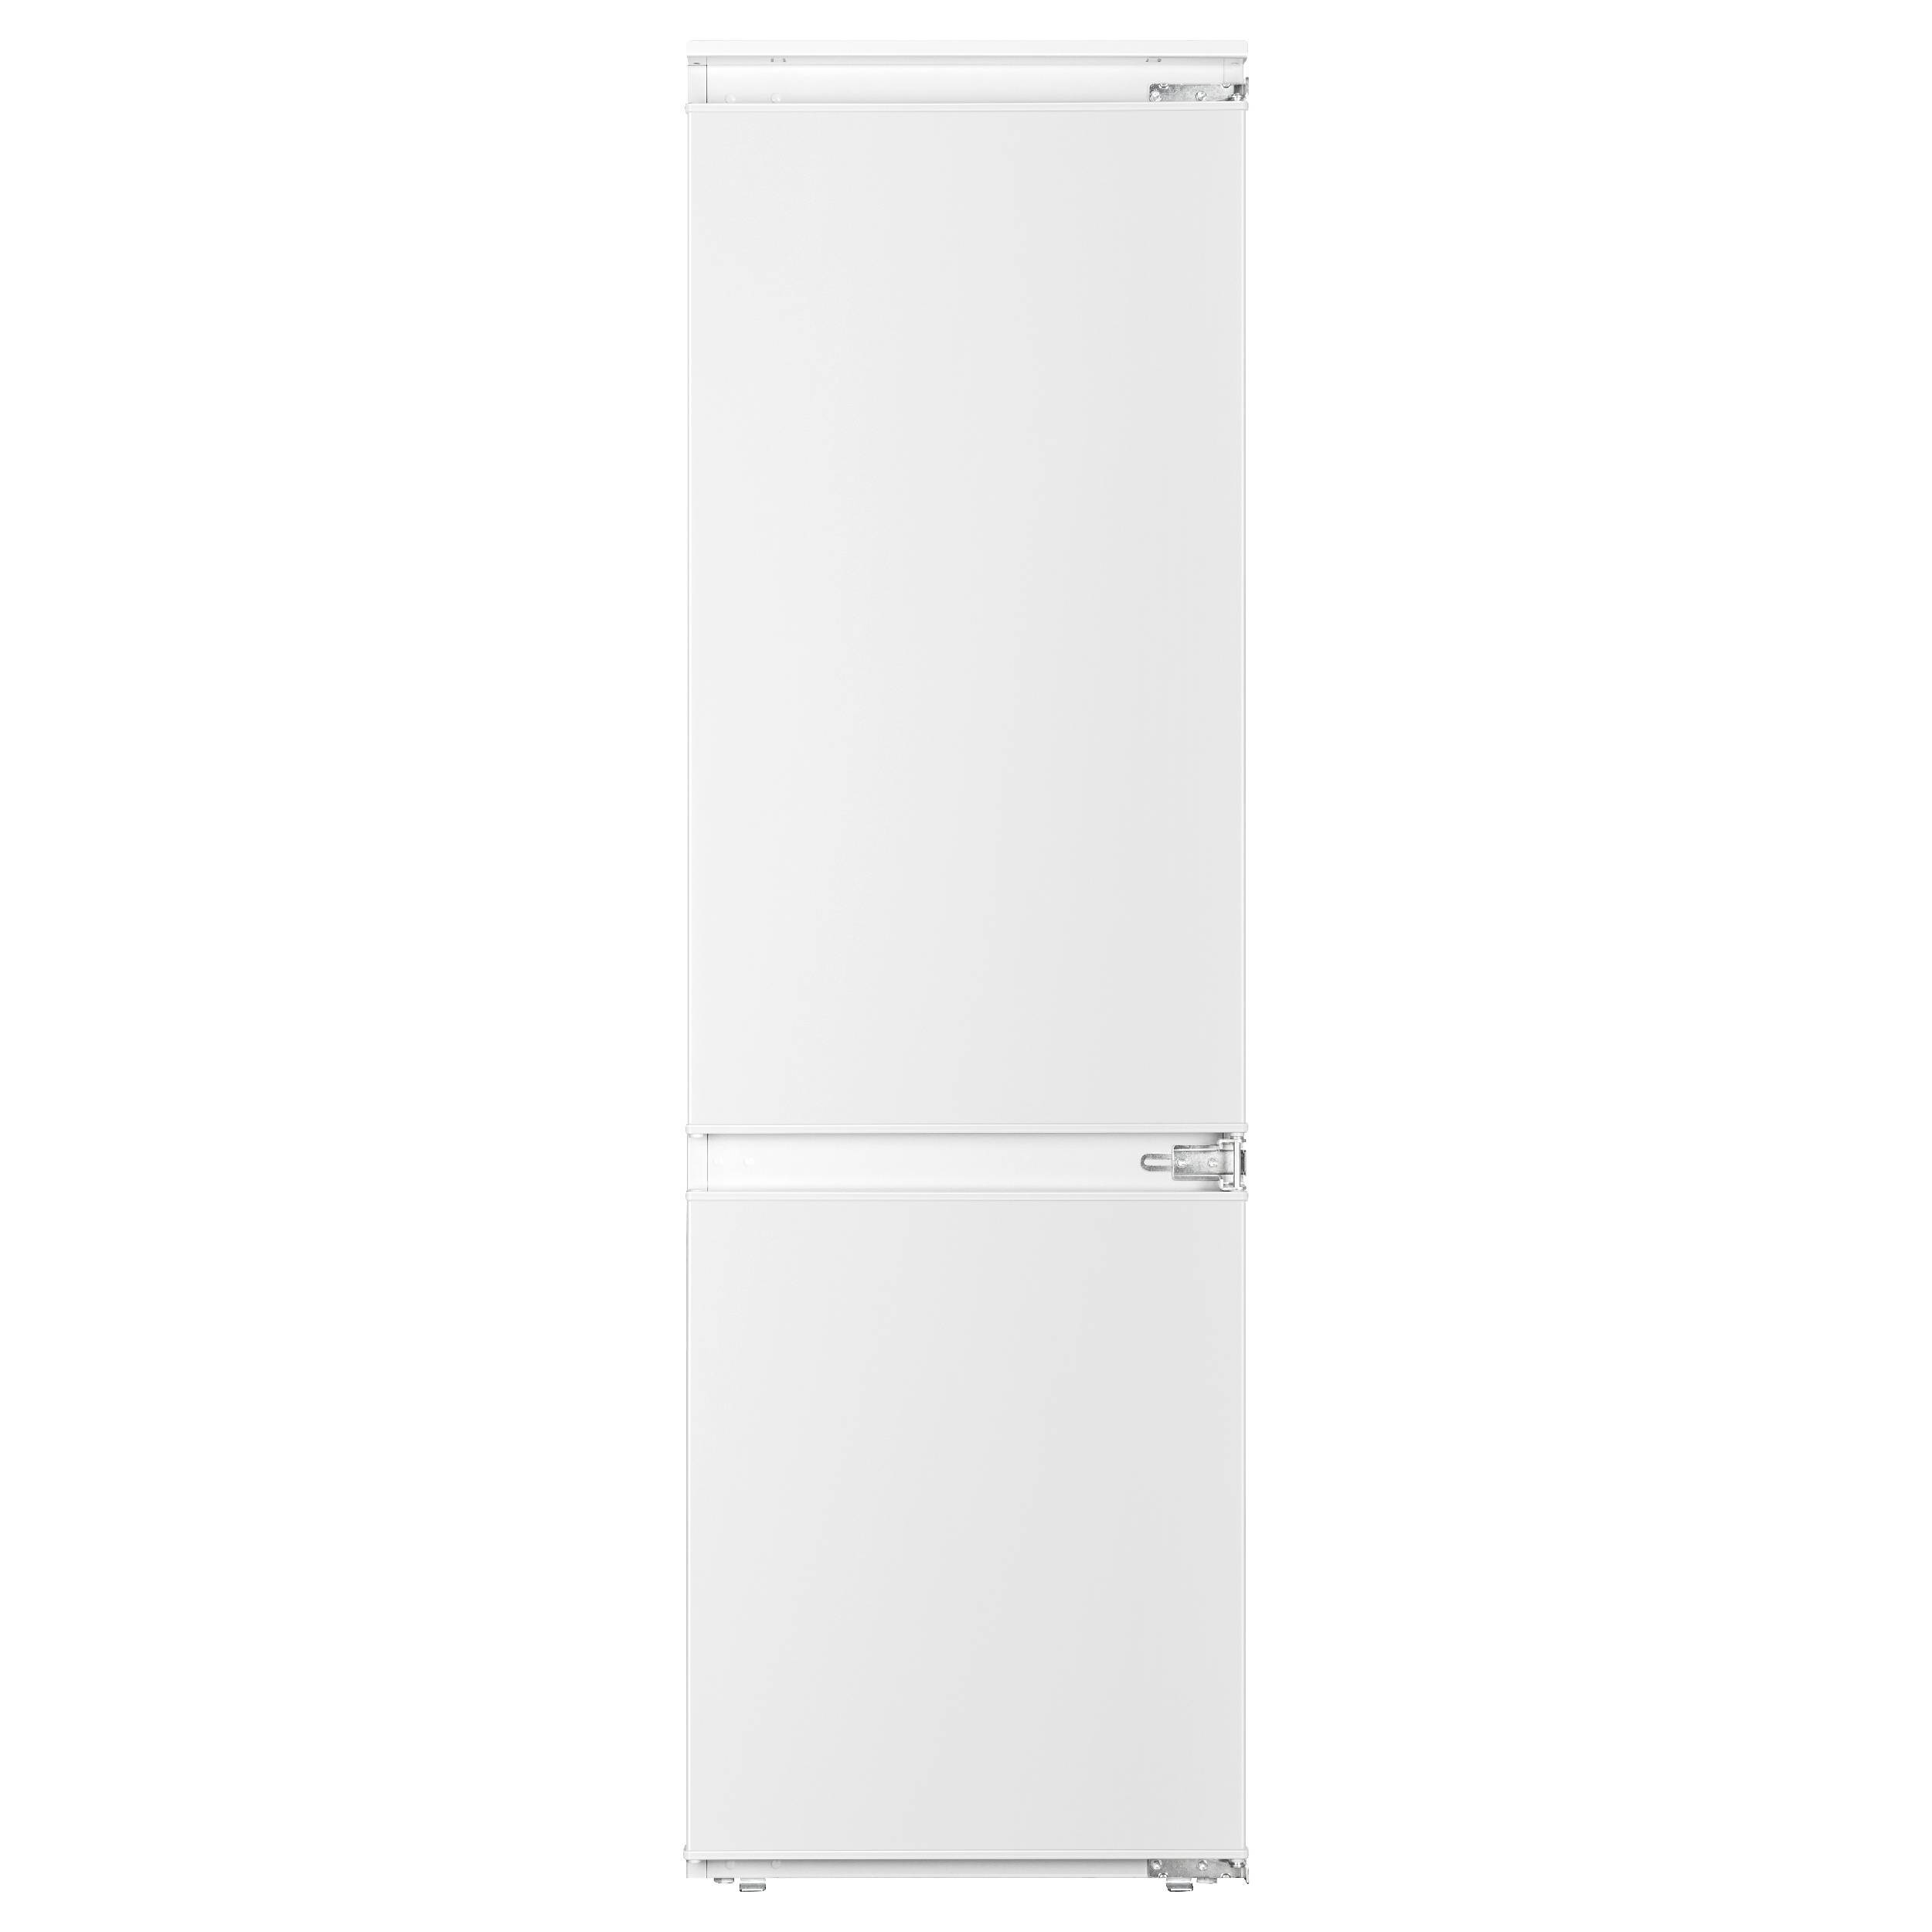 90997642 Встраиваемый холодильник FI 2200 54x176.9 см цвет белый STLM-0431462 EVELUX